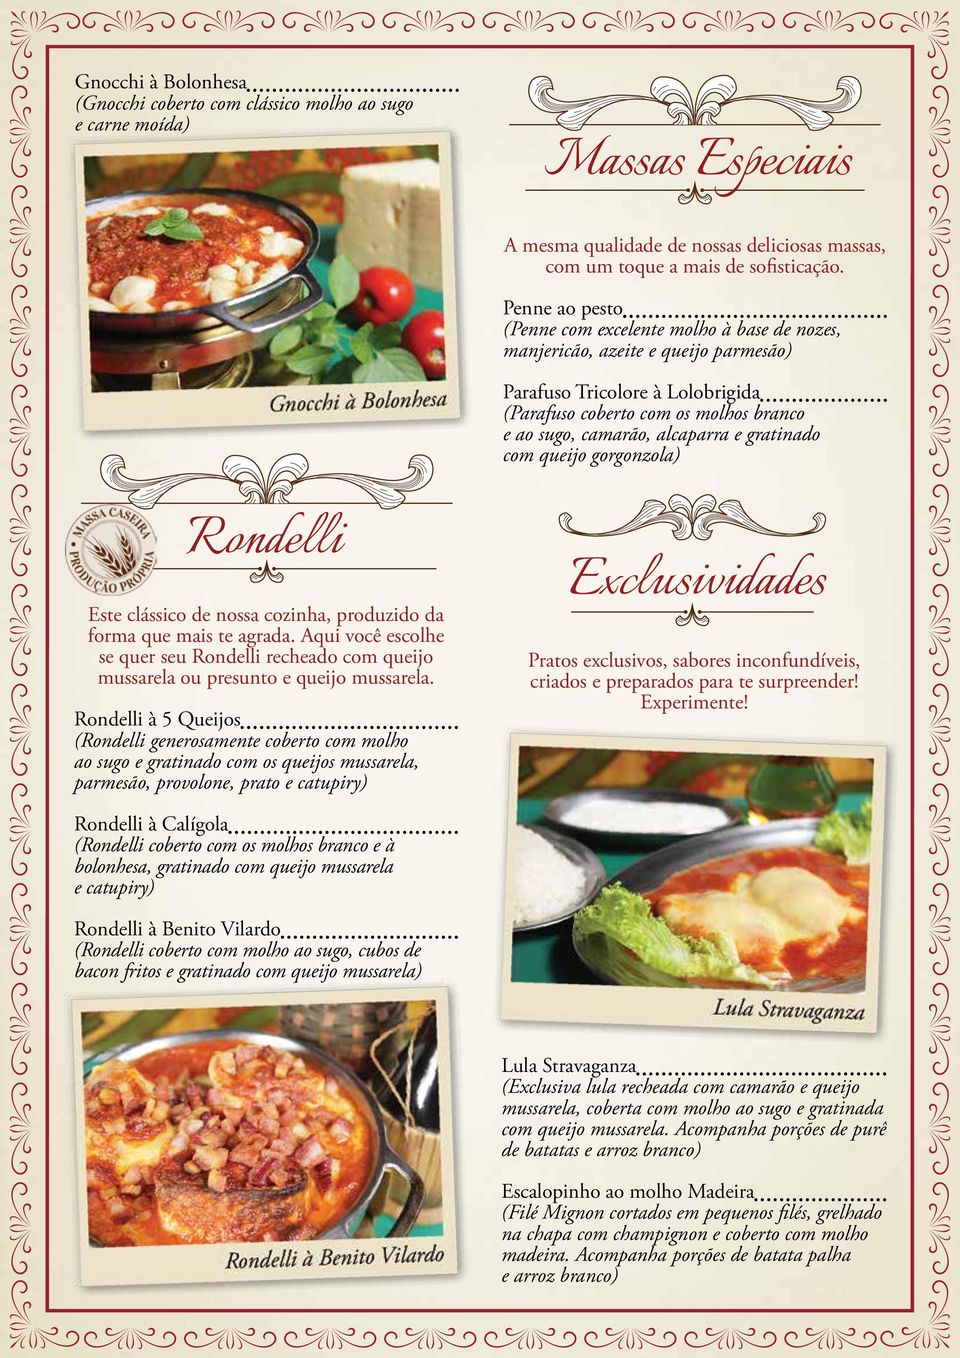 e gratinado com queijo gorgonzola) Rondelli Este clássico de nossa cozinha, produzido da forma que mais te agrada.